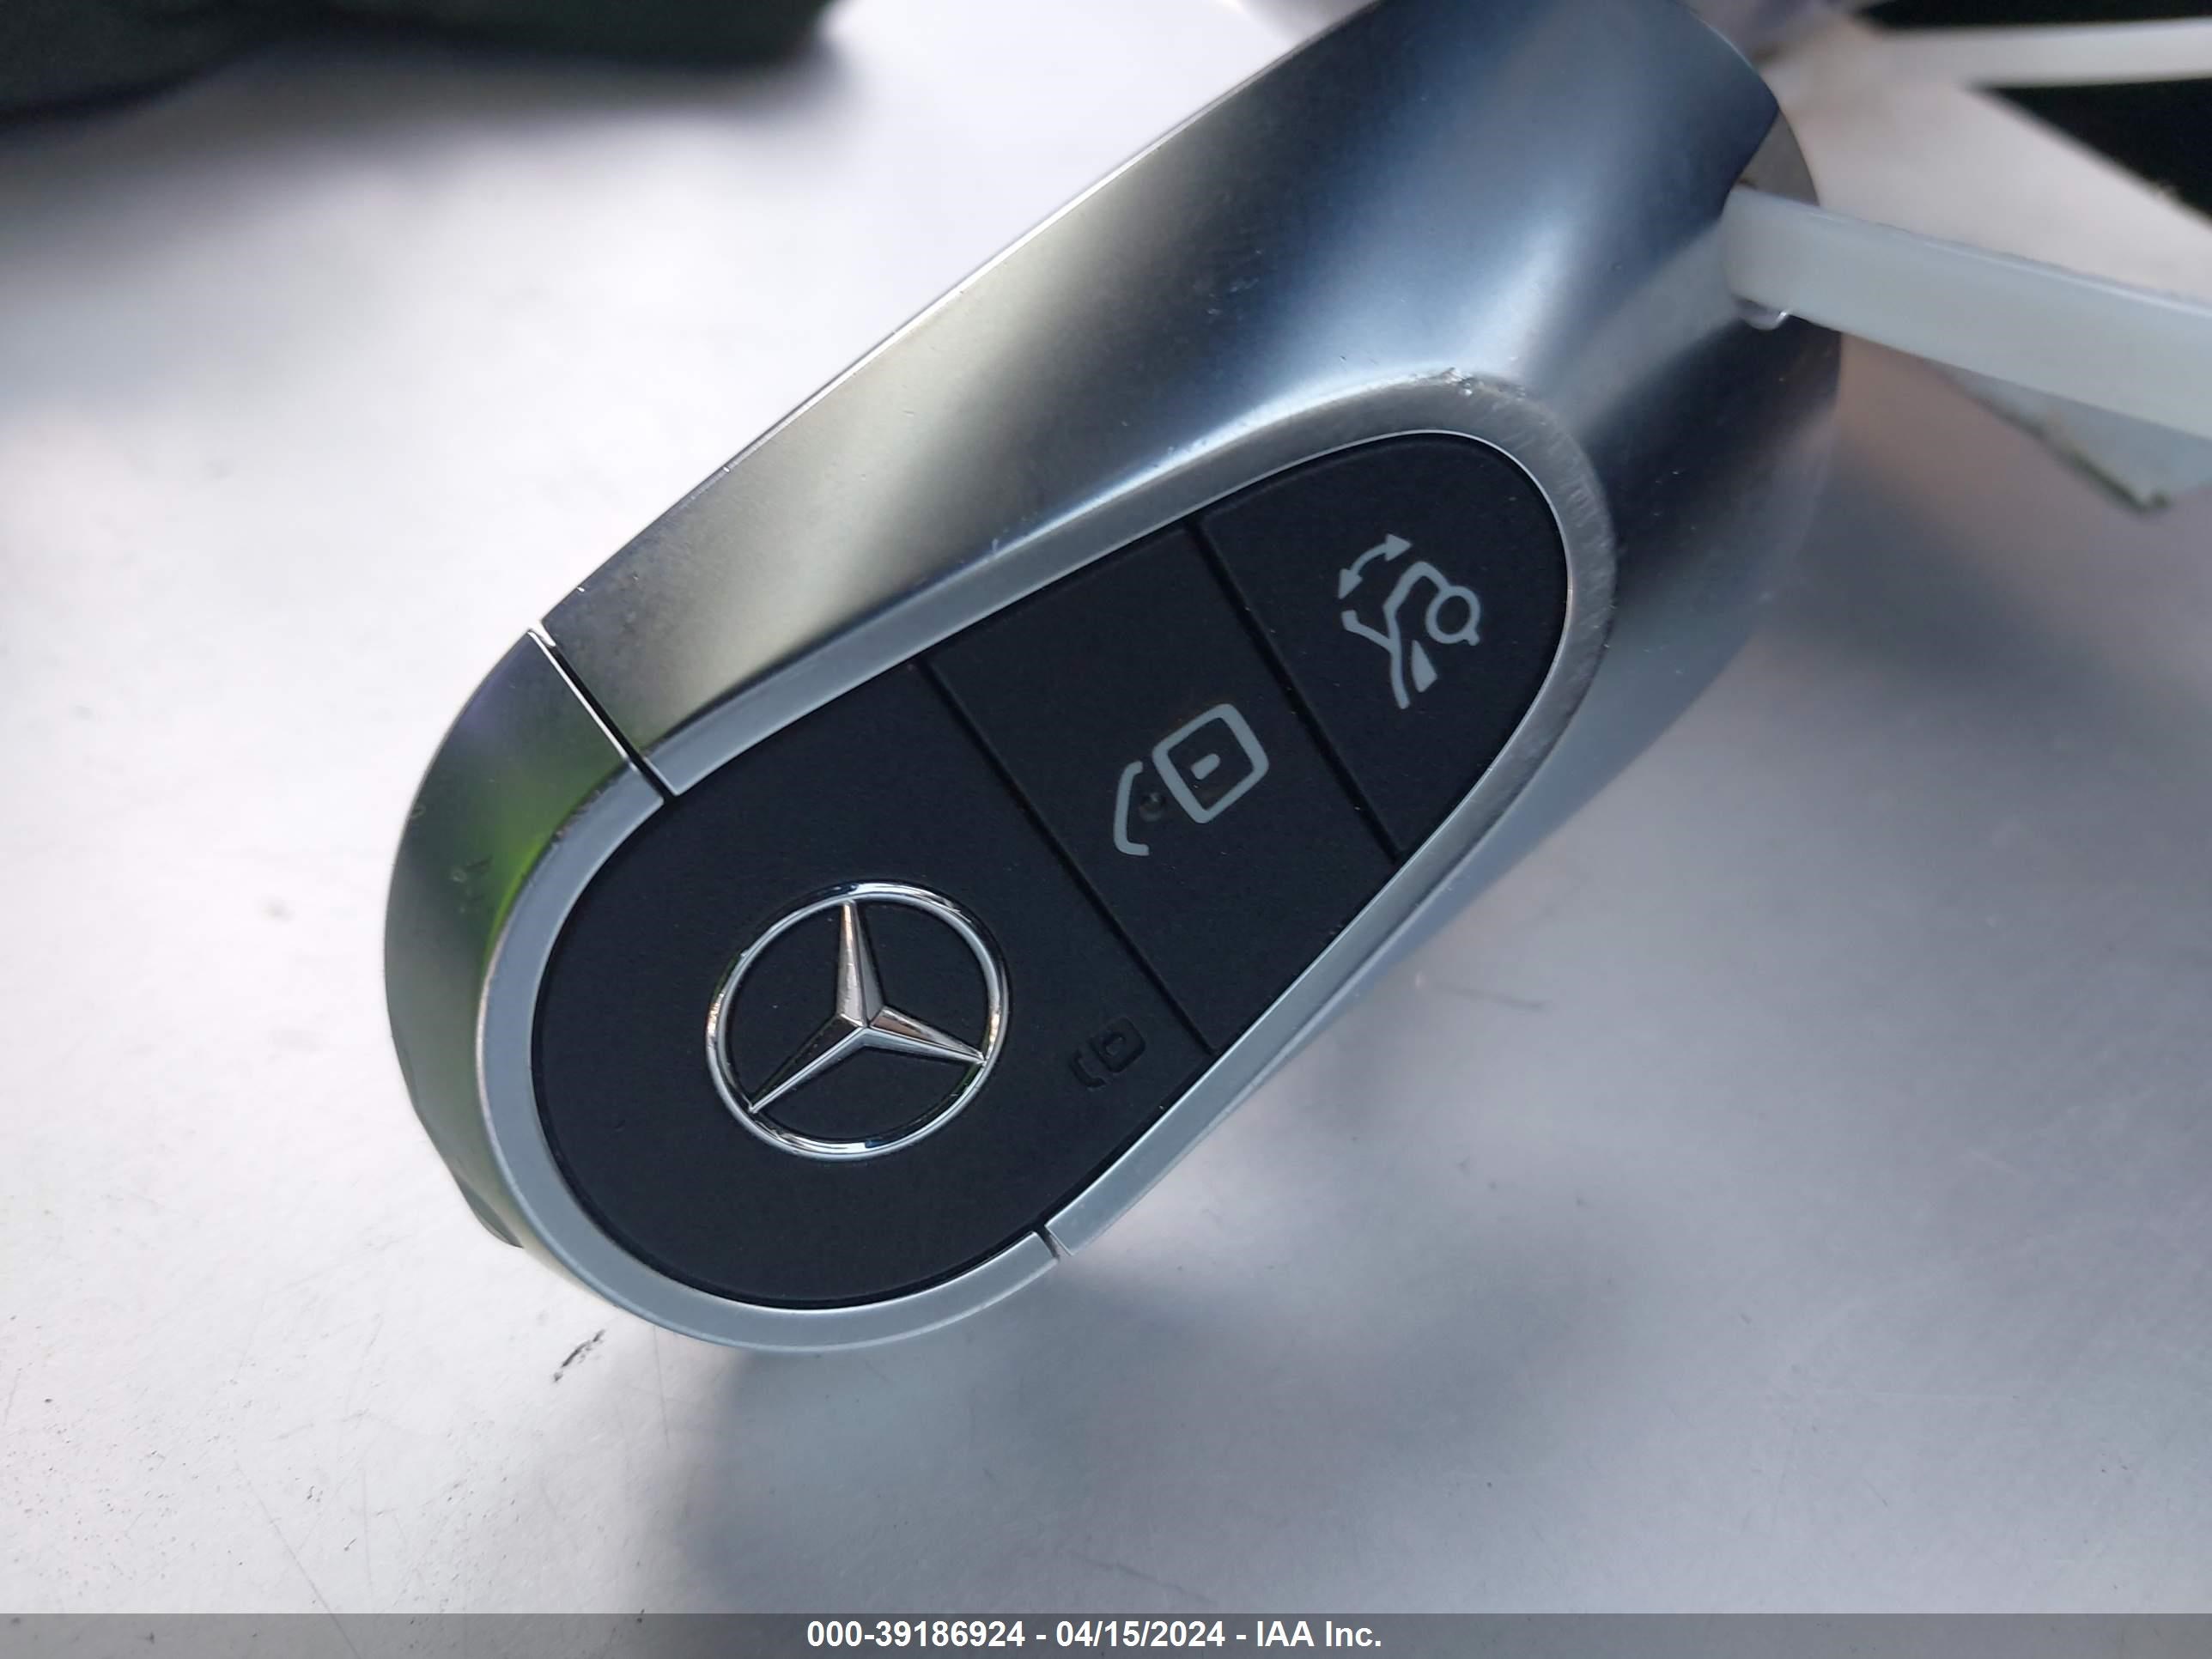 2022 Mercedes-Benz C 300 Sedan vin: W1KAF4GB8NR017428